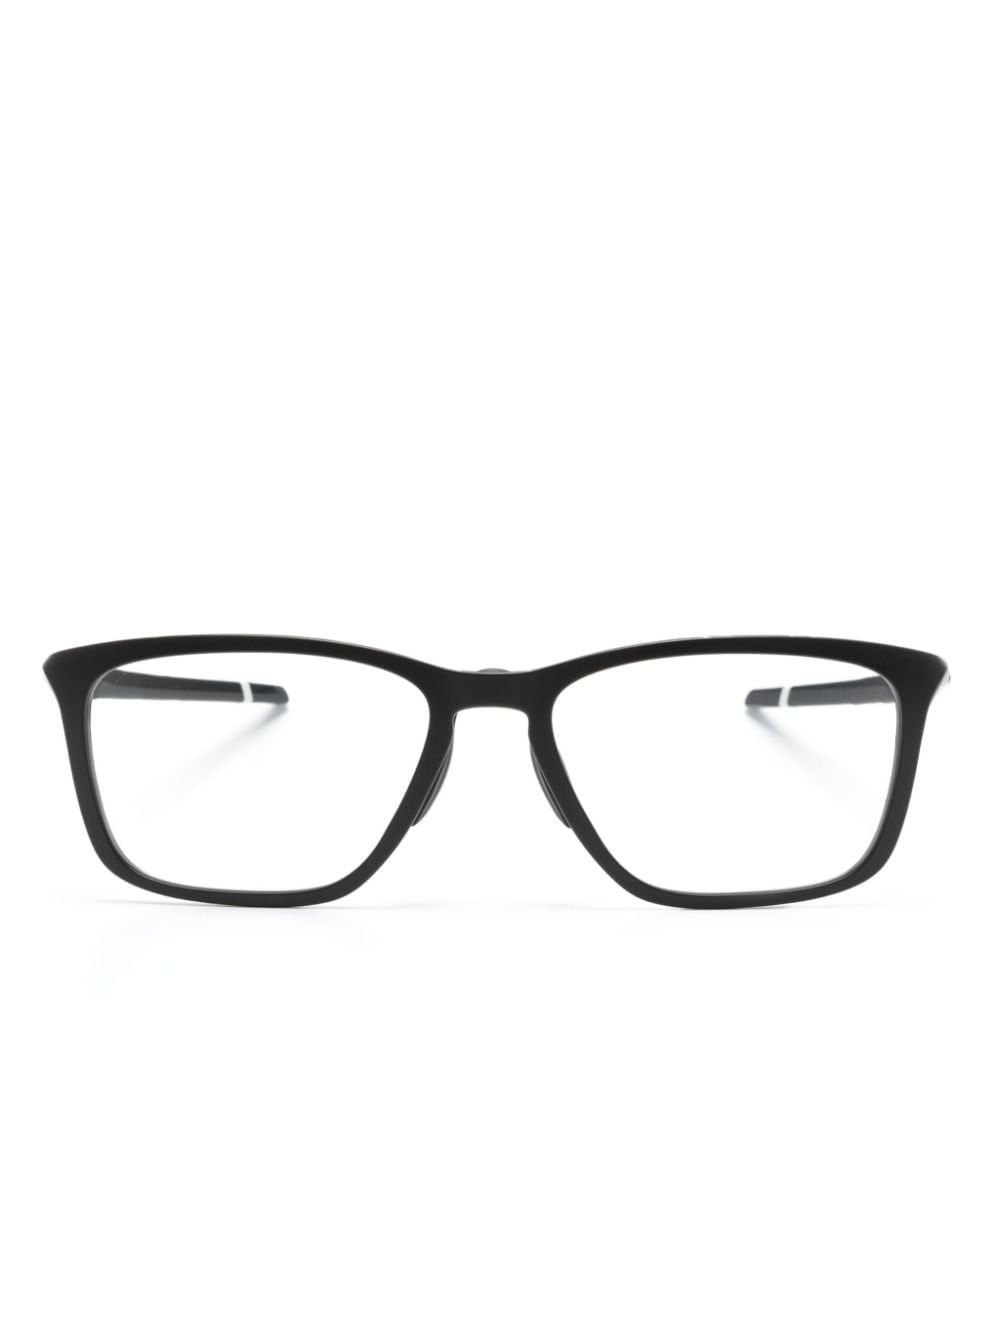 oakley lunettes de vue à monture rectangulaire - noir